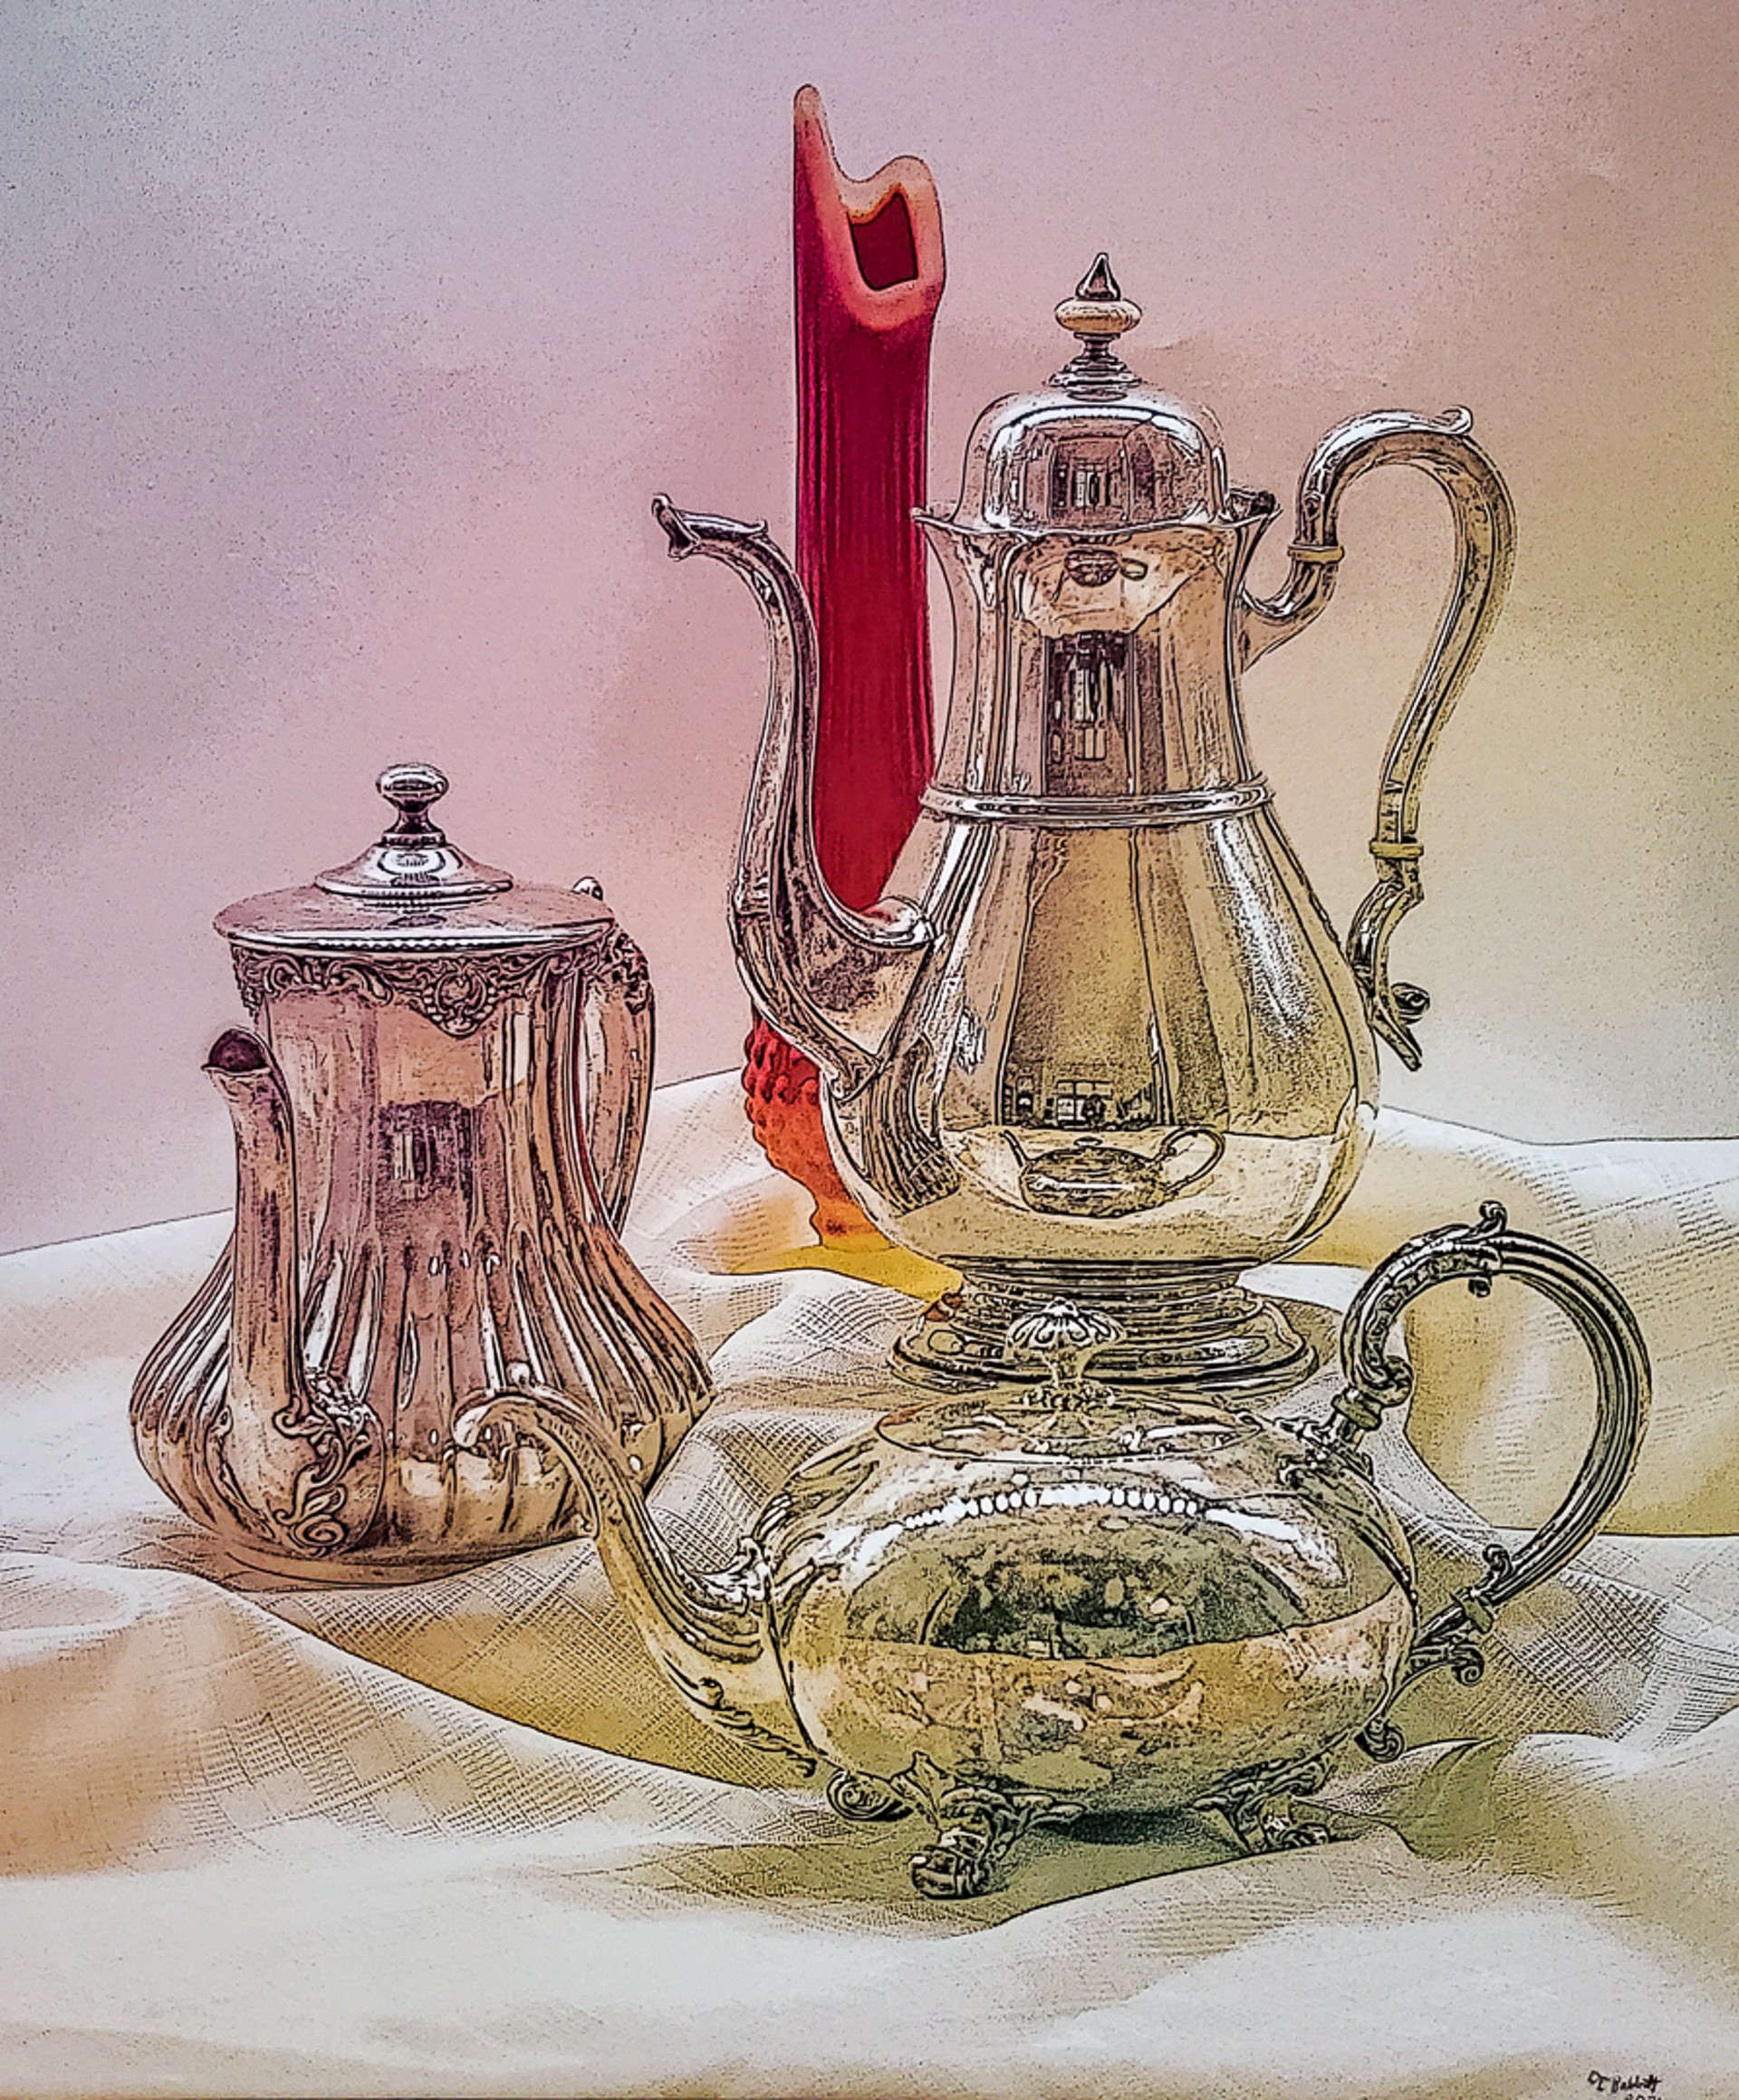 3 Pots and a Vase by Terrance Rabbitt